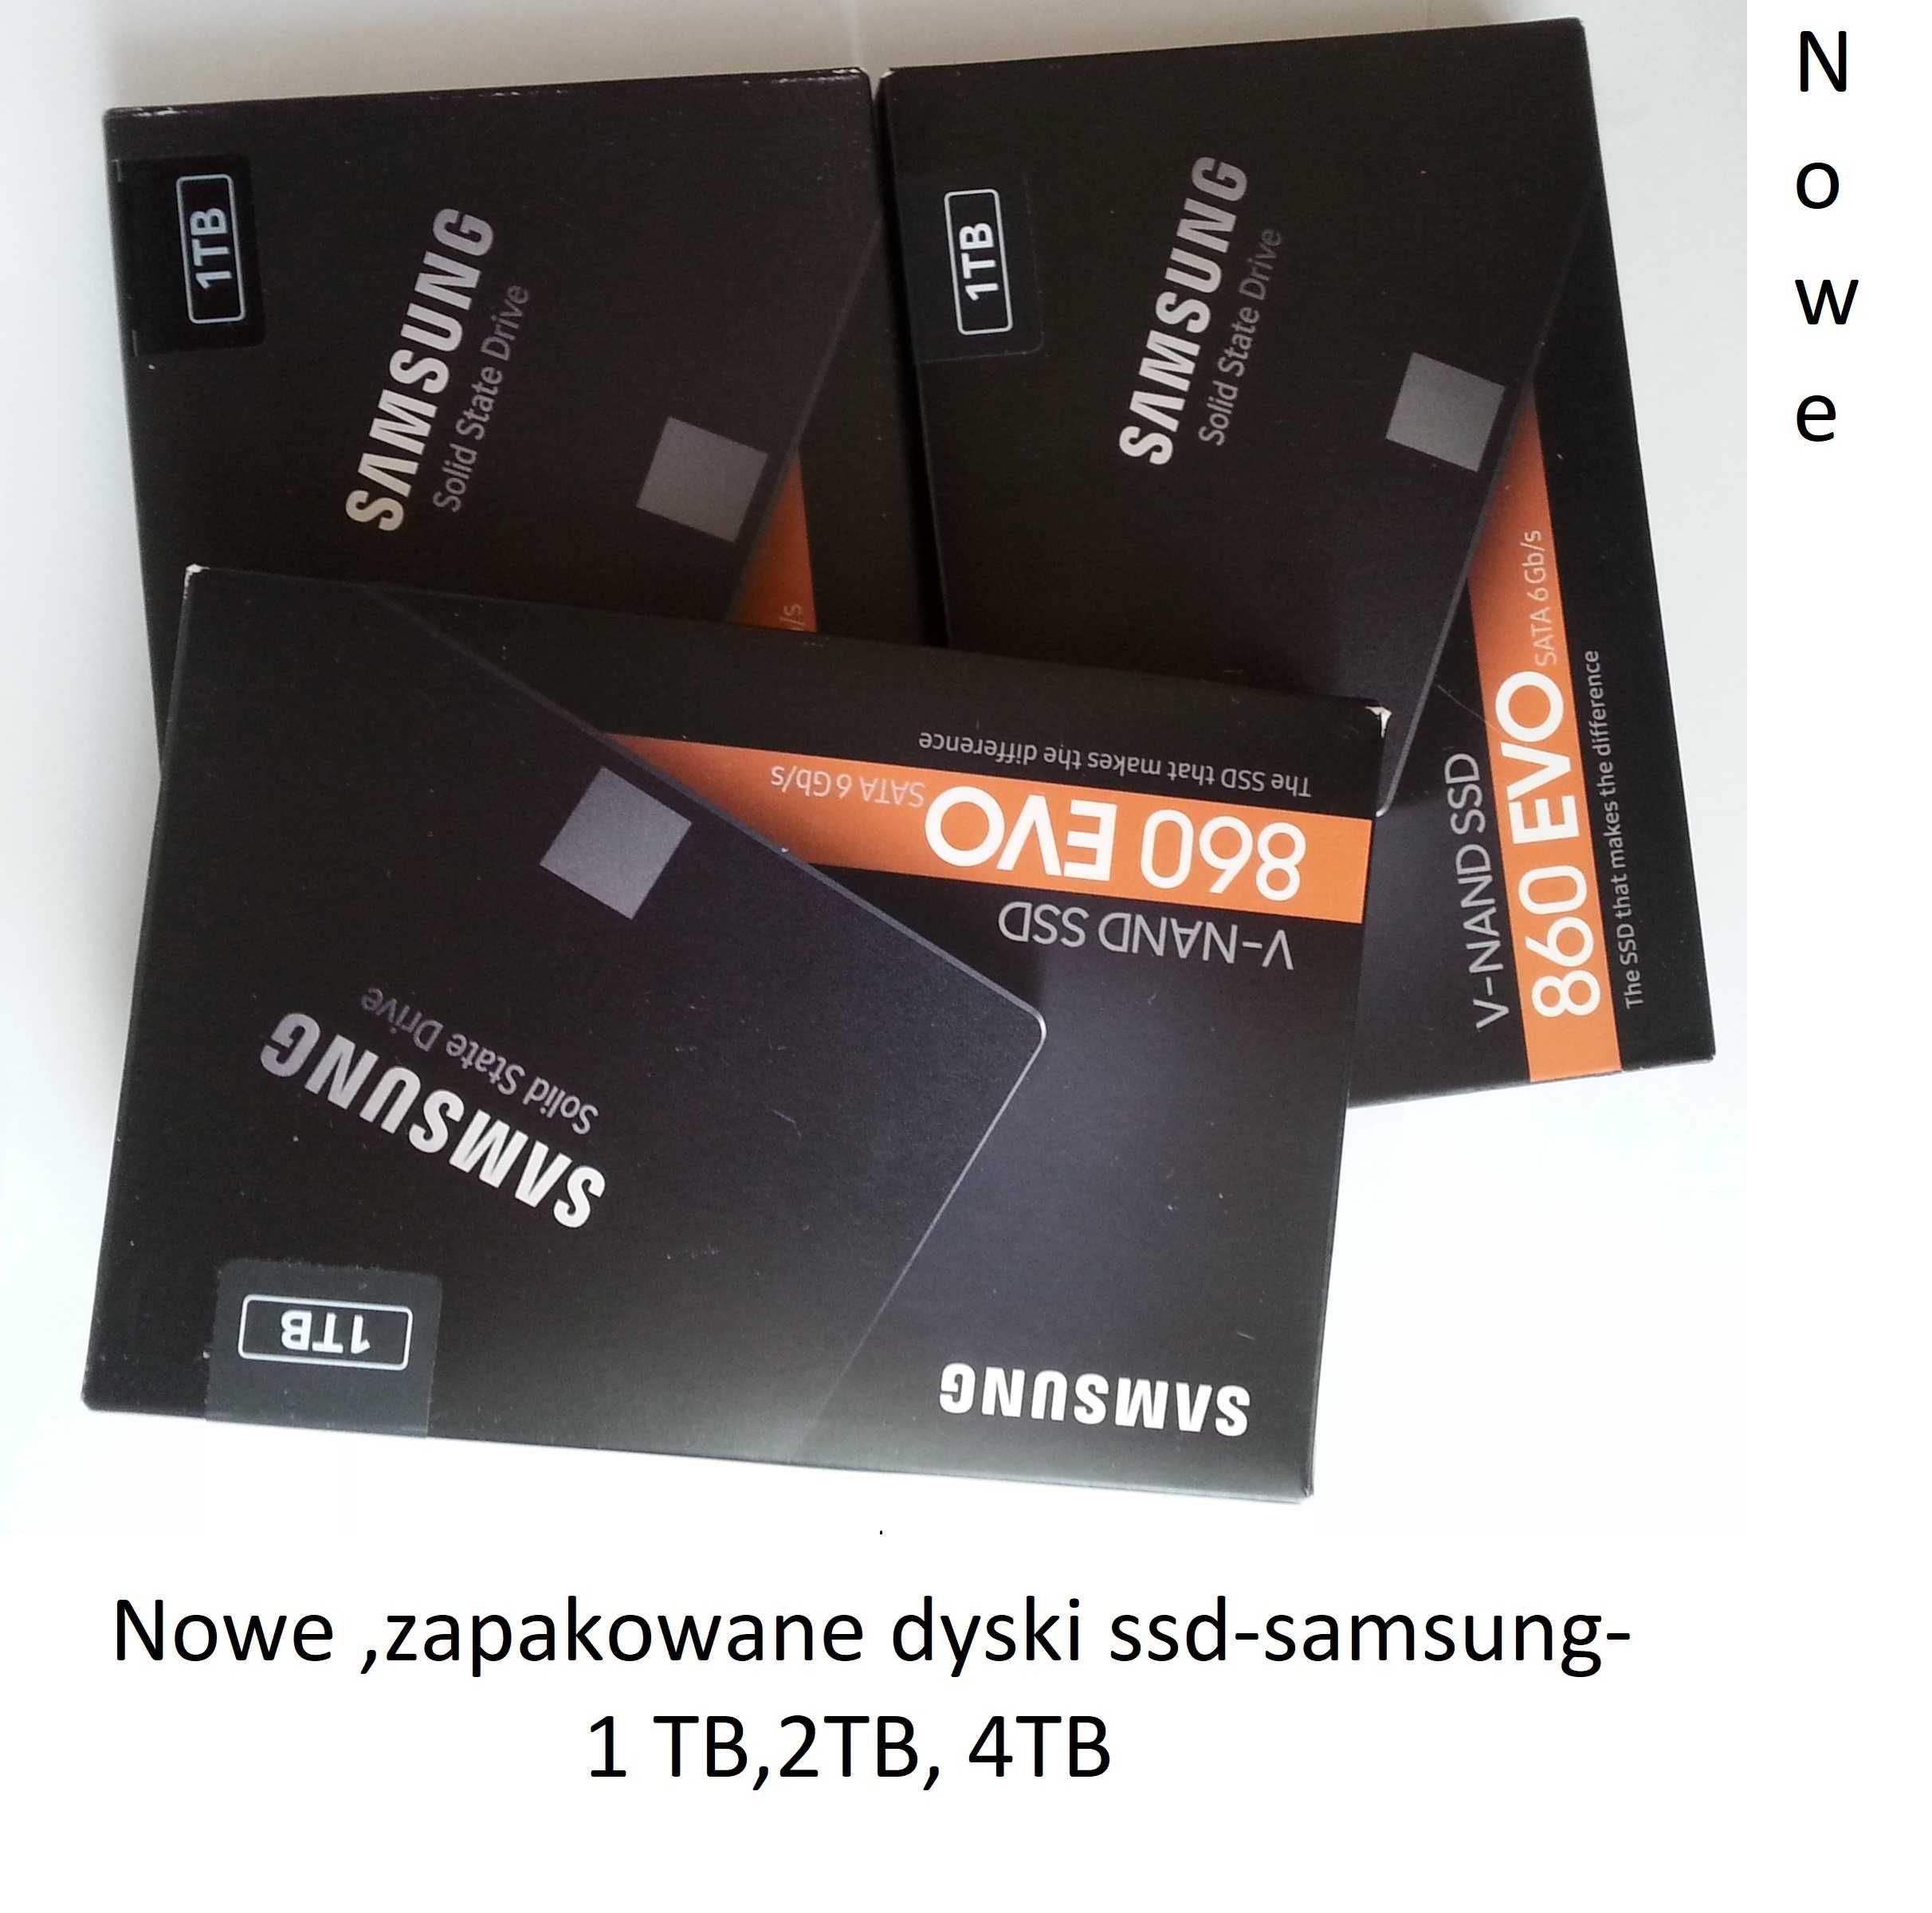 Rewelacyjny Dysk ssd-Samsung 860 EVO-4tb.Polecam inne modele.